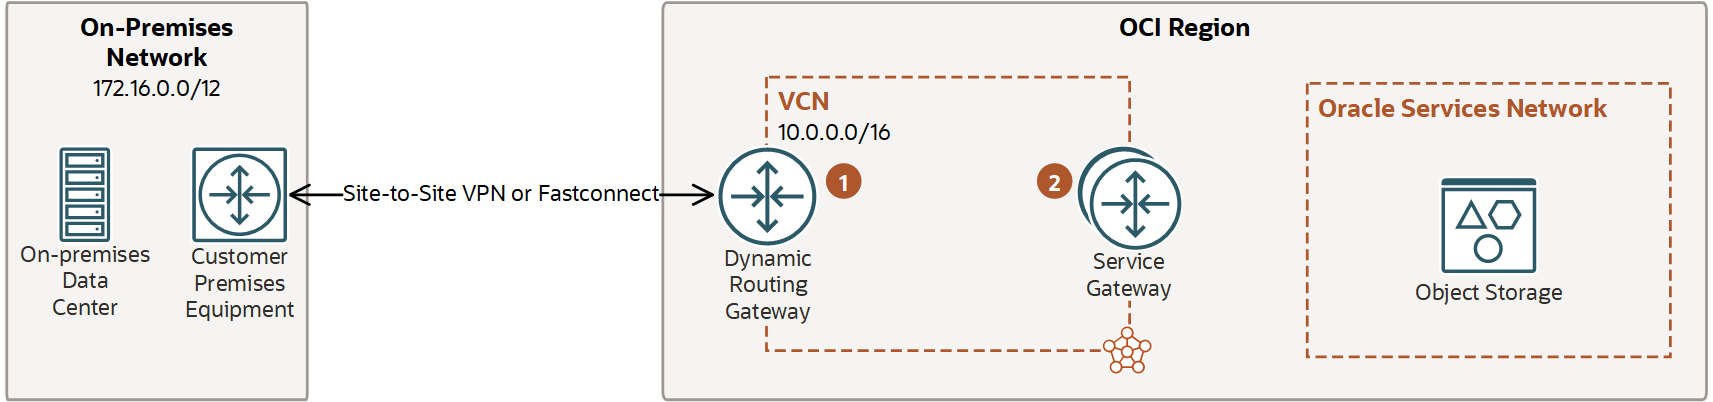 En esta imagen se muestra la tarea 4: configurar el enrutamiento de entrada entre el DRG y el gateway de servicio.